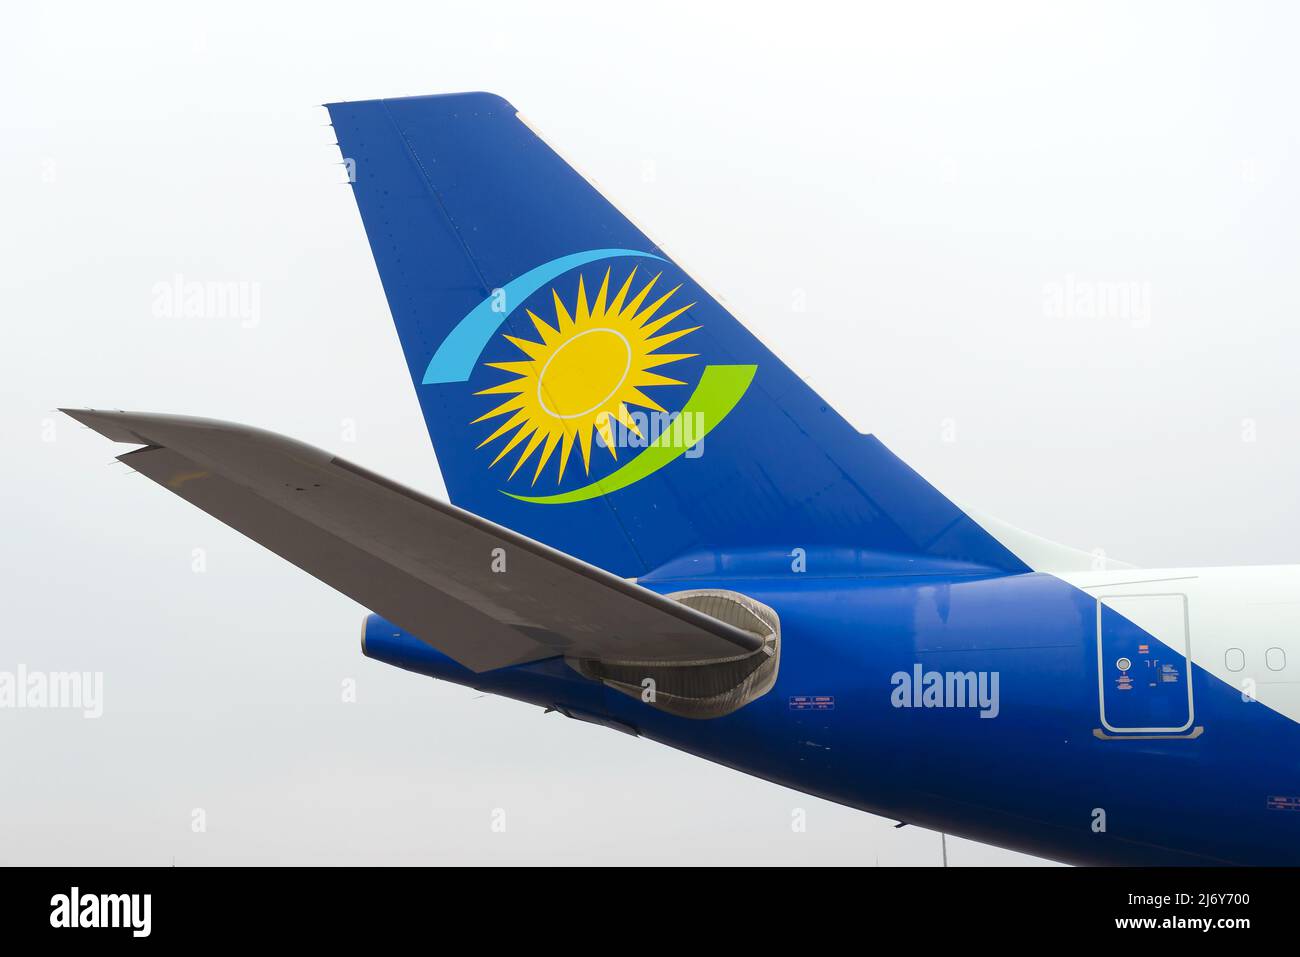 Coda dell'aereo Rwandair Airbus A330. Velivolo A330-200 della coda di Rwandair Airlines. Foto Stock